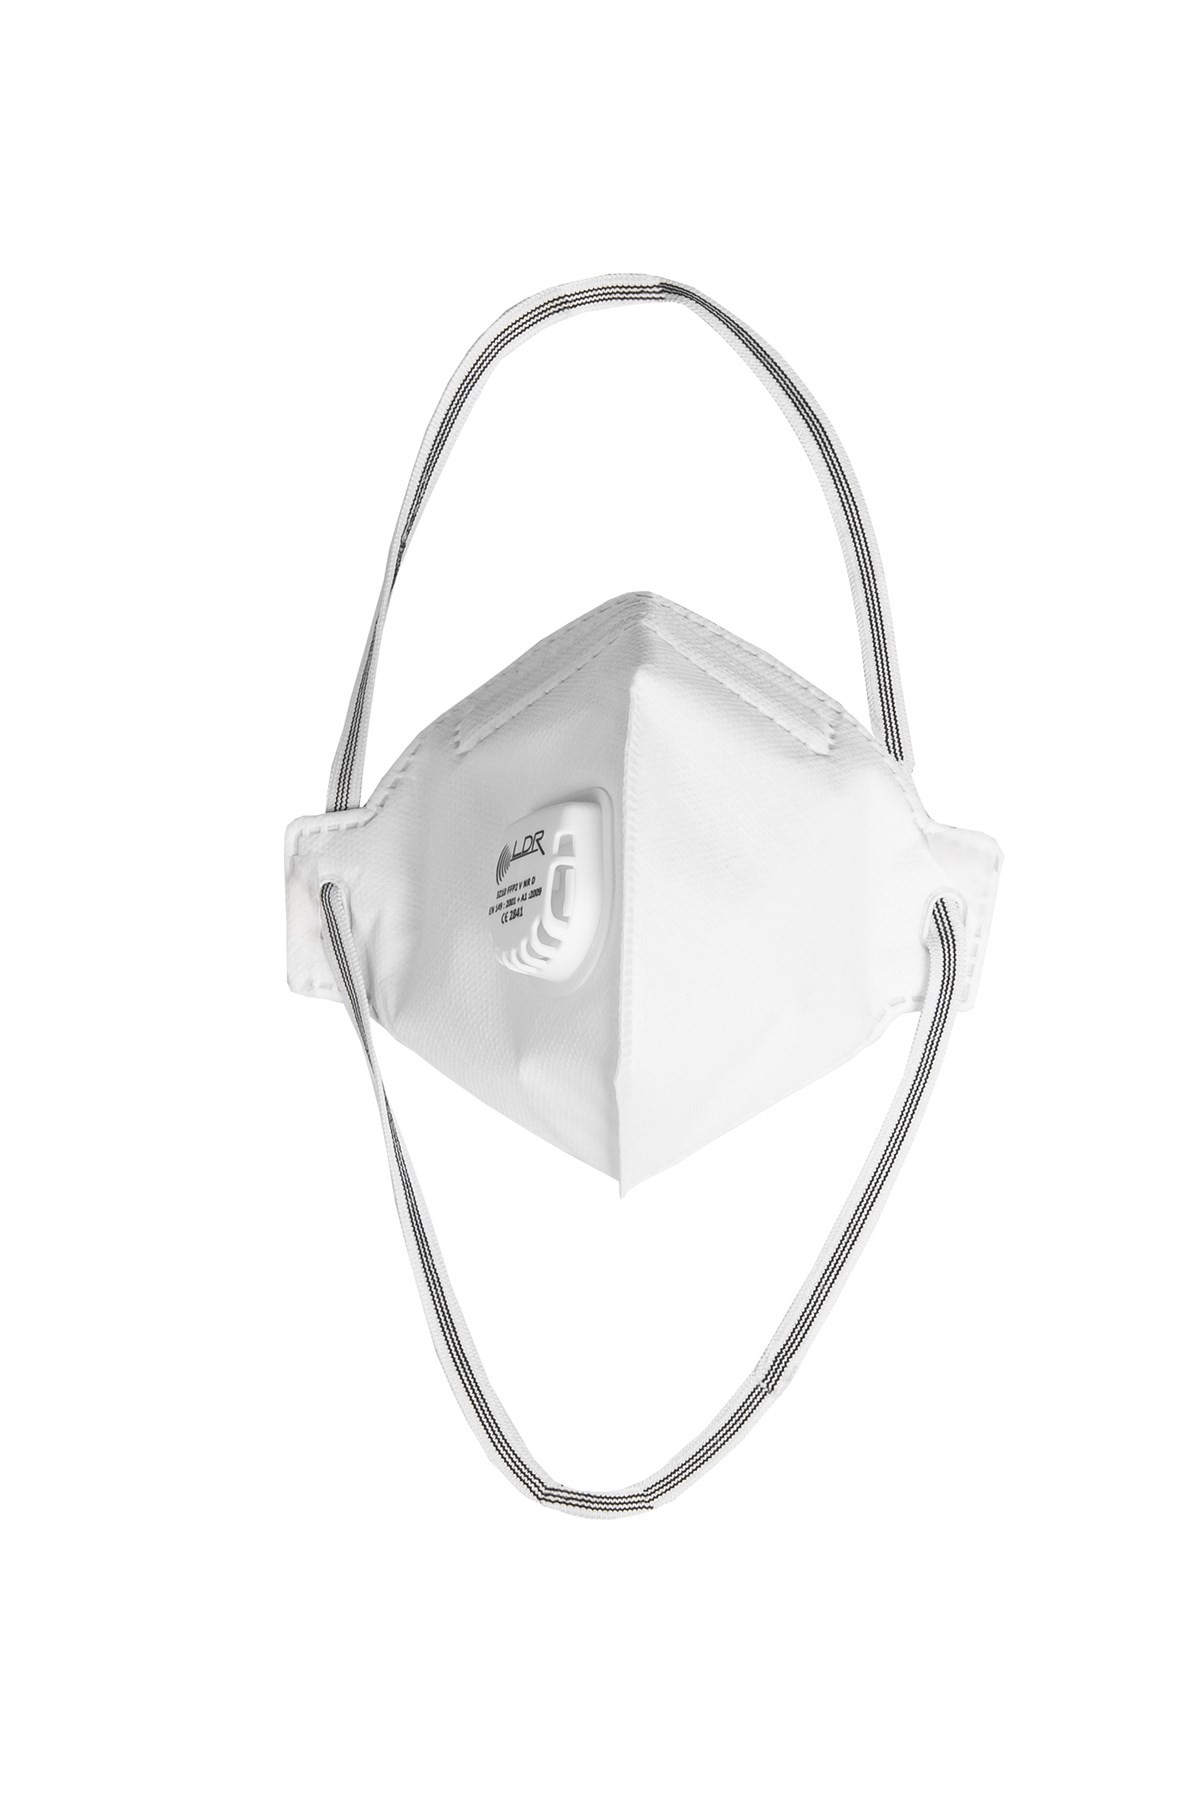 LDR 3210 FFP2 NR V Пылезащитная маска, белая (15 шт. в упаковке)